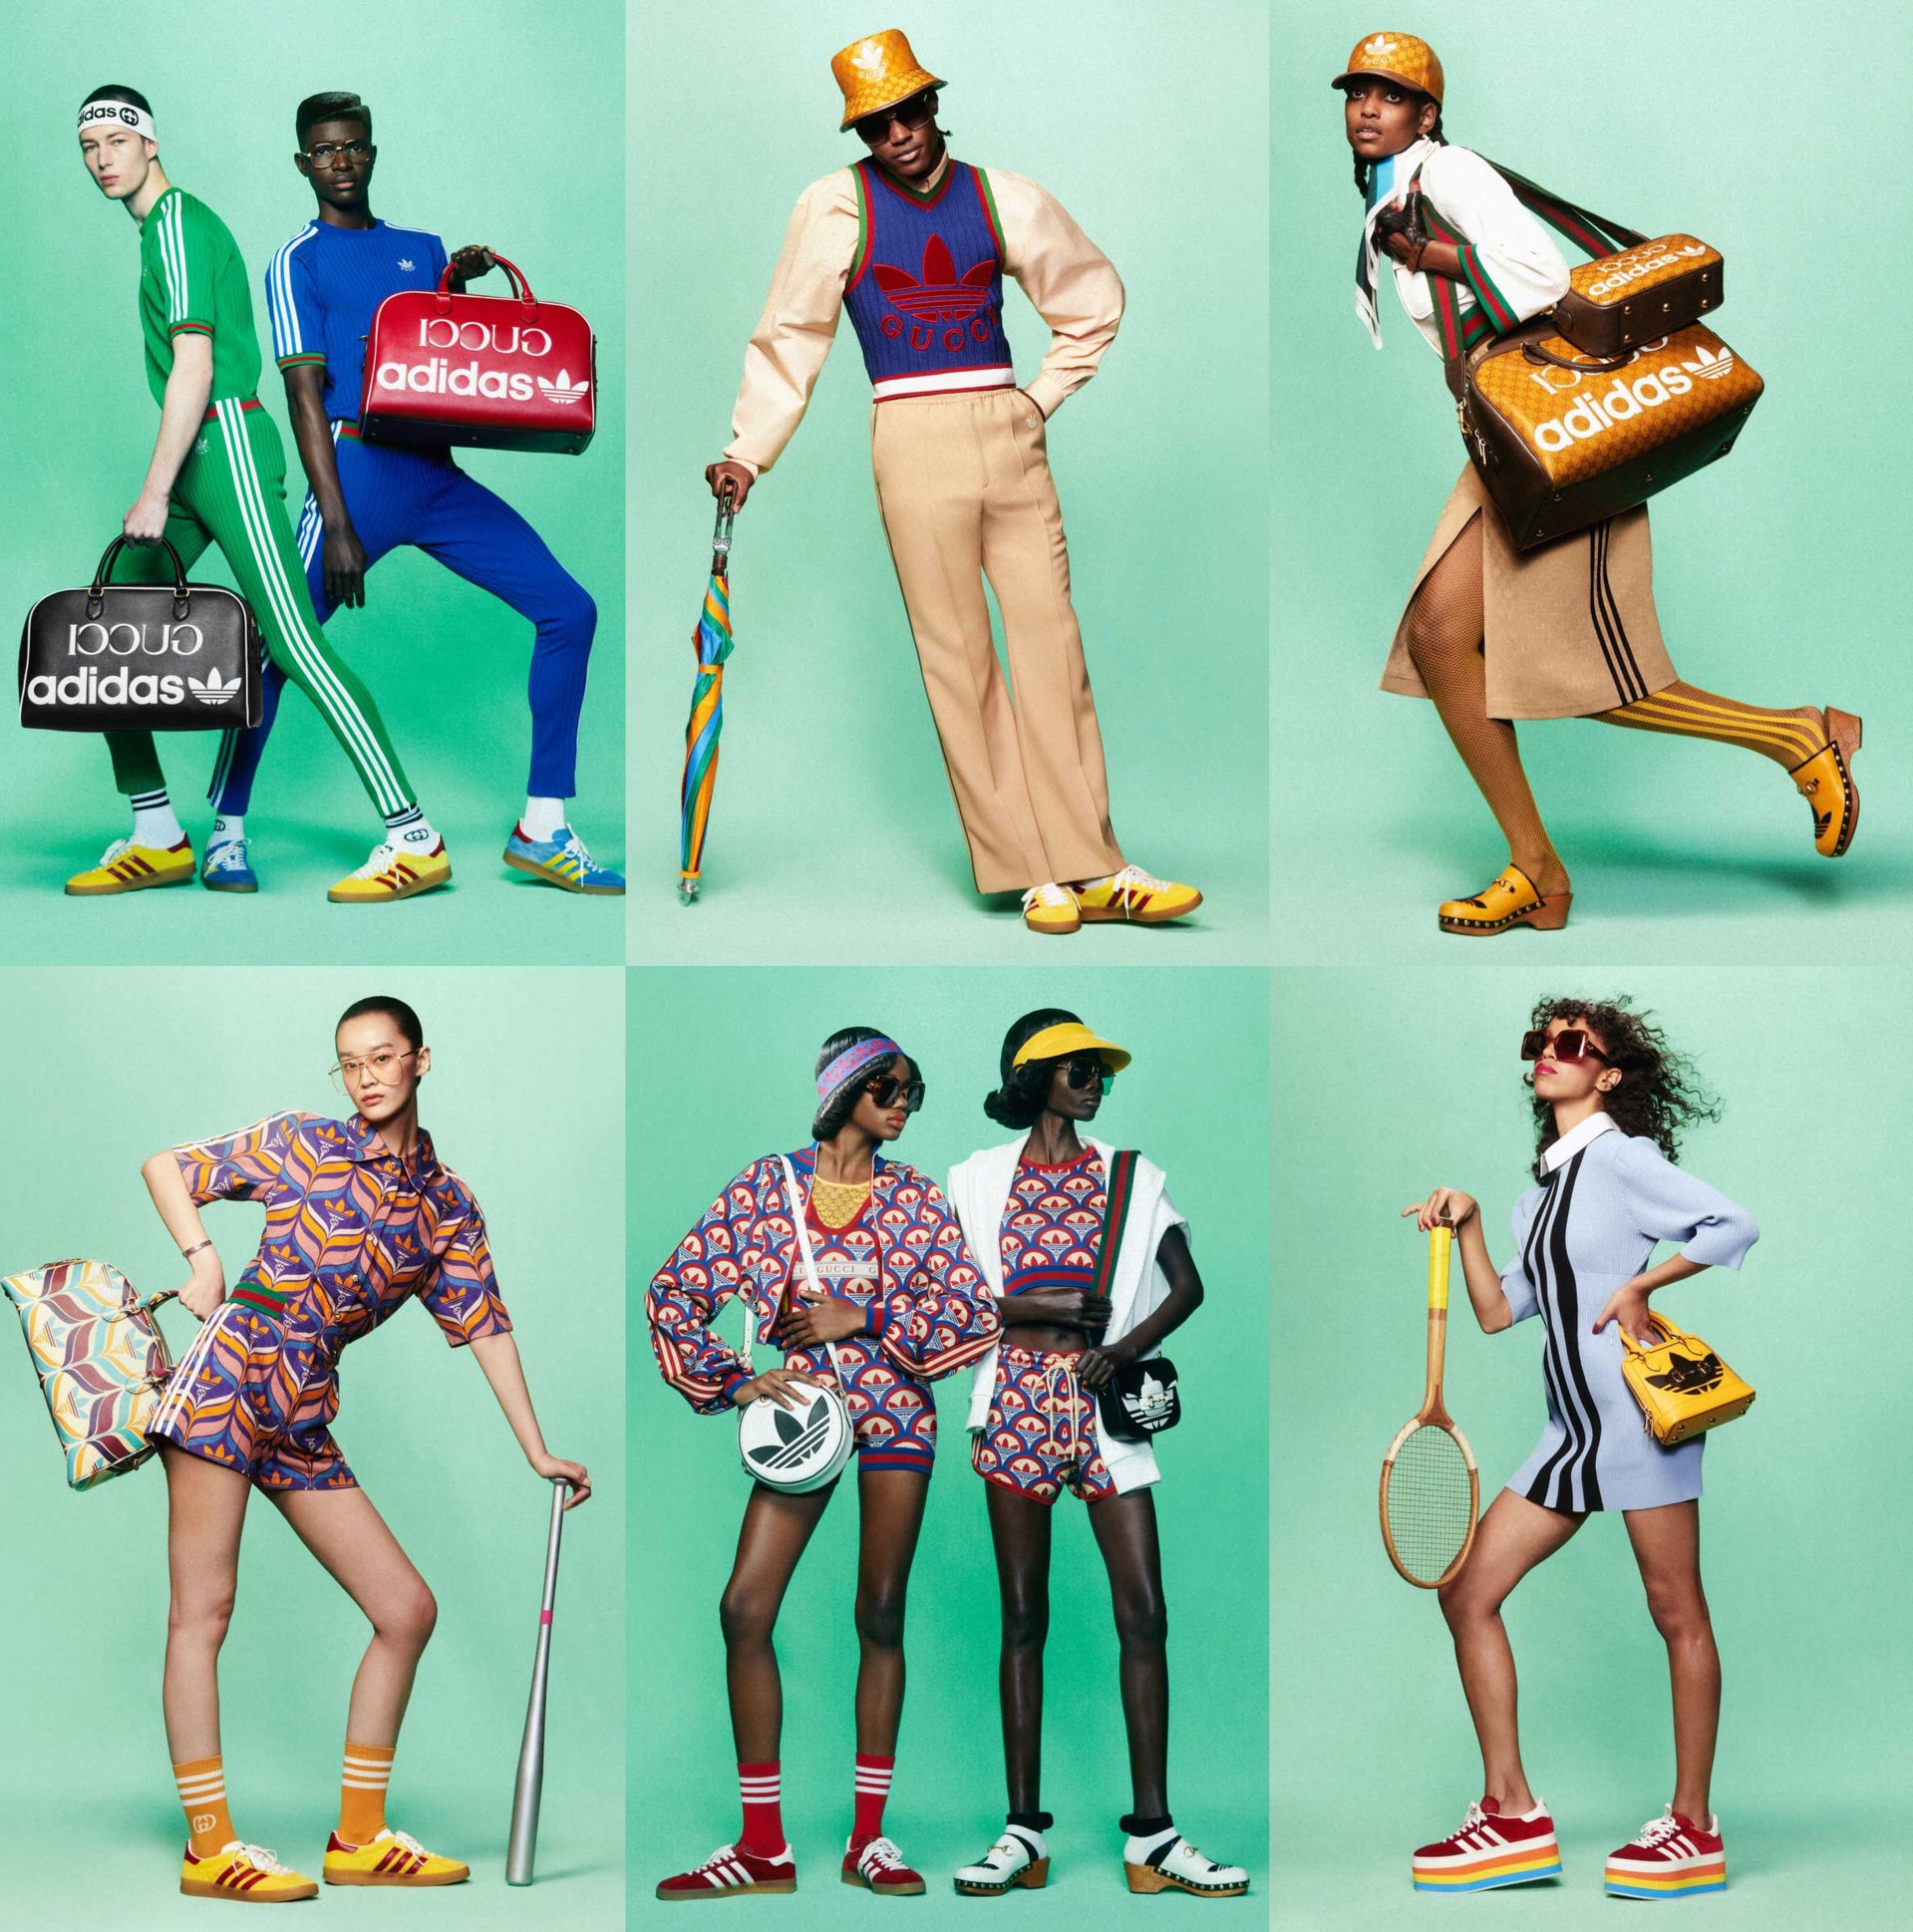 Adidas x Gucci: Khi sự cuồng nhiệt của thể thao giao thoa với những món đồ xa xỉ - Ảnh 13